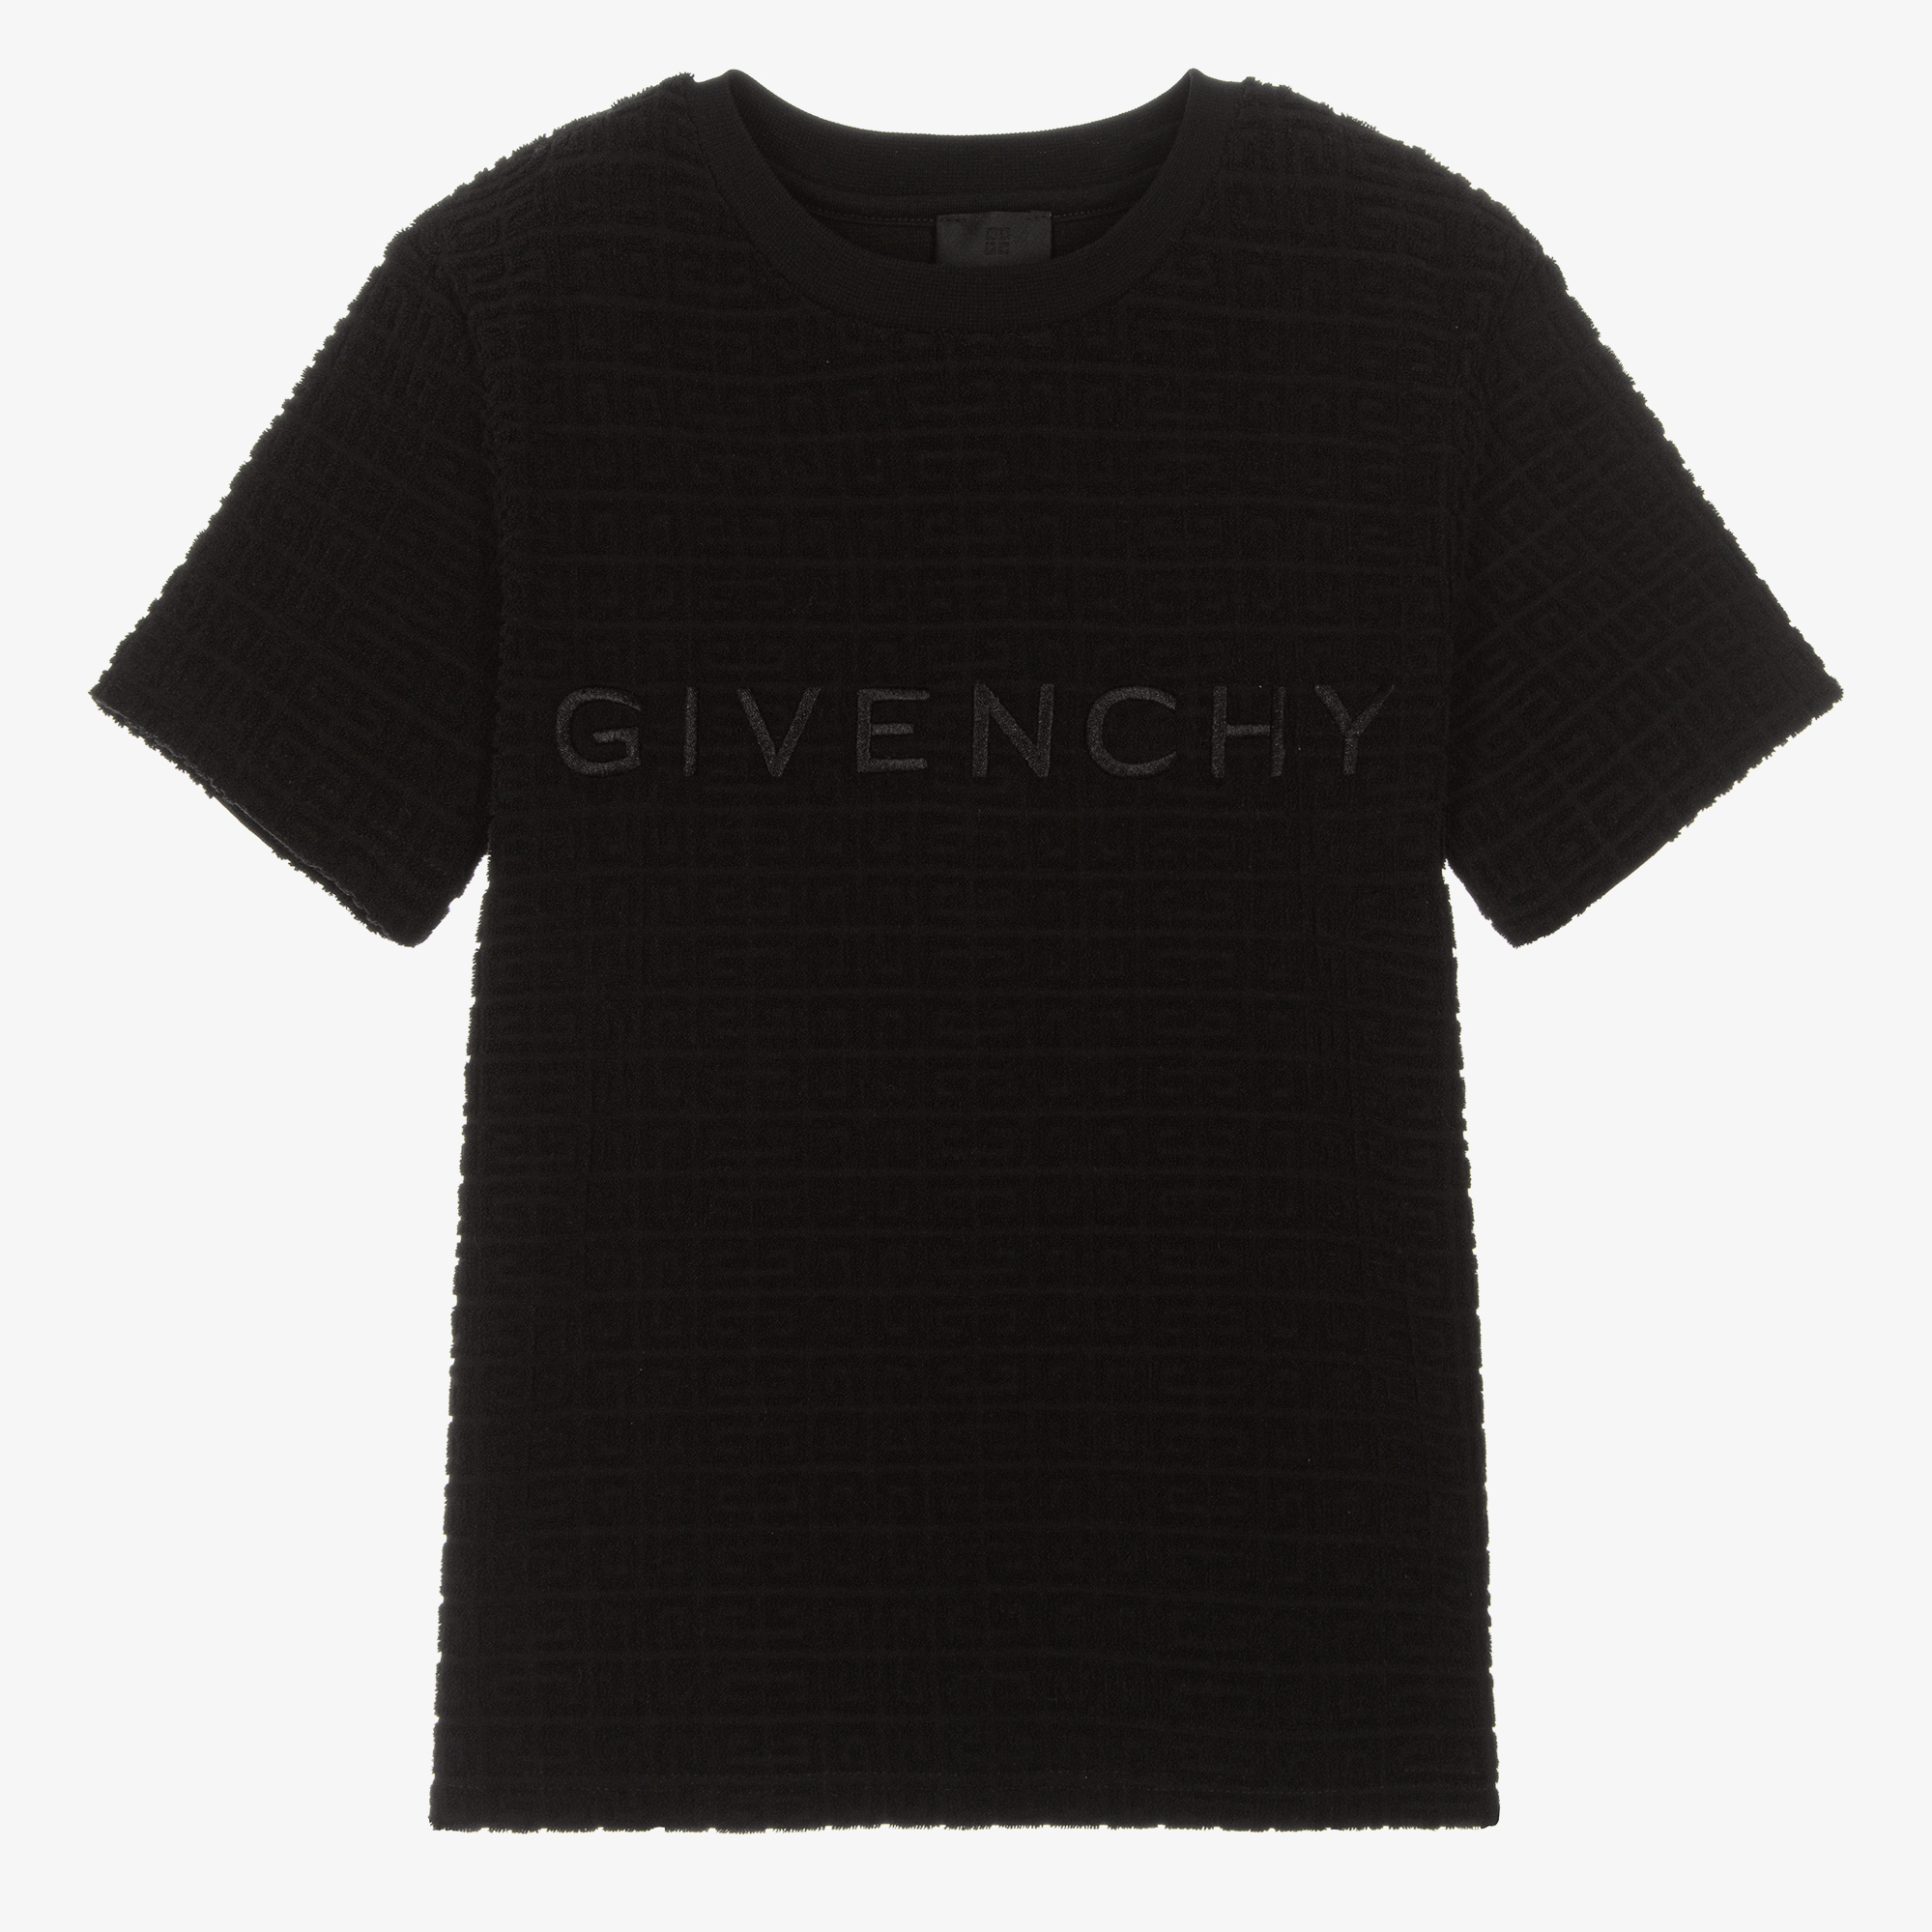 Givenchy Teen Boys Black 4G Cotton T-Shirt